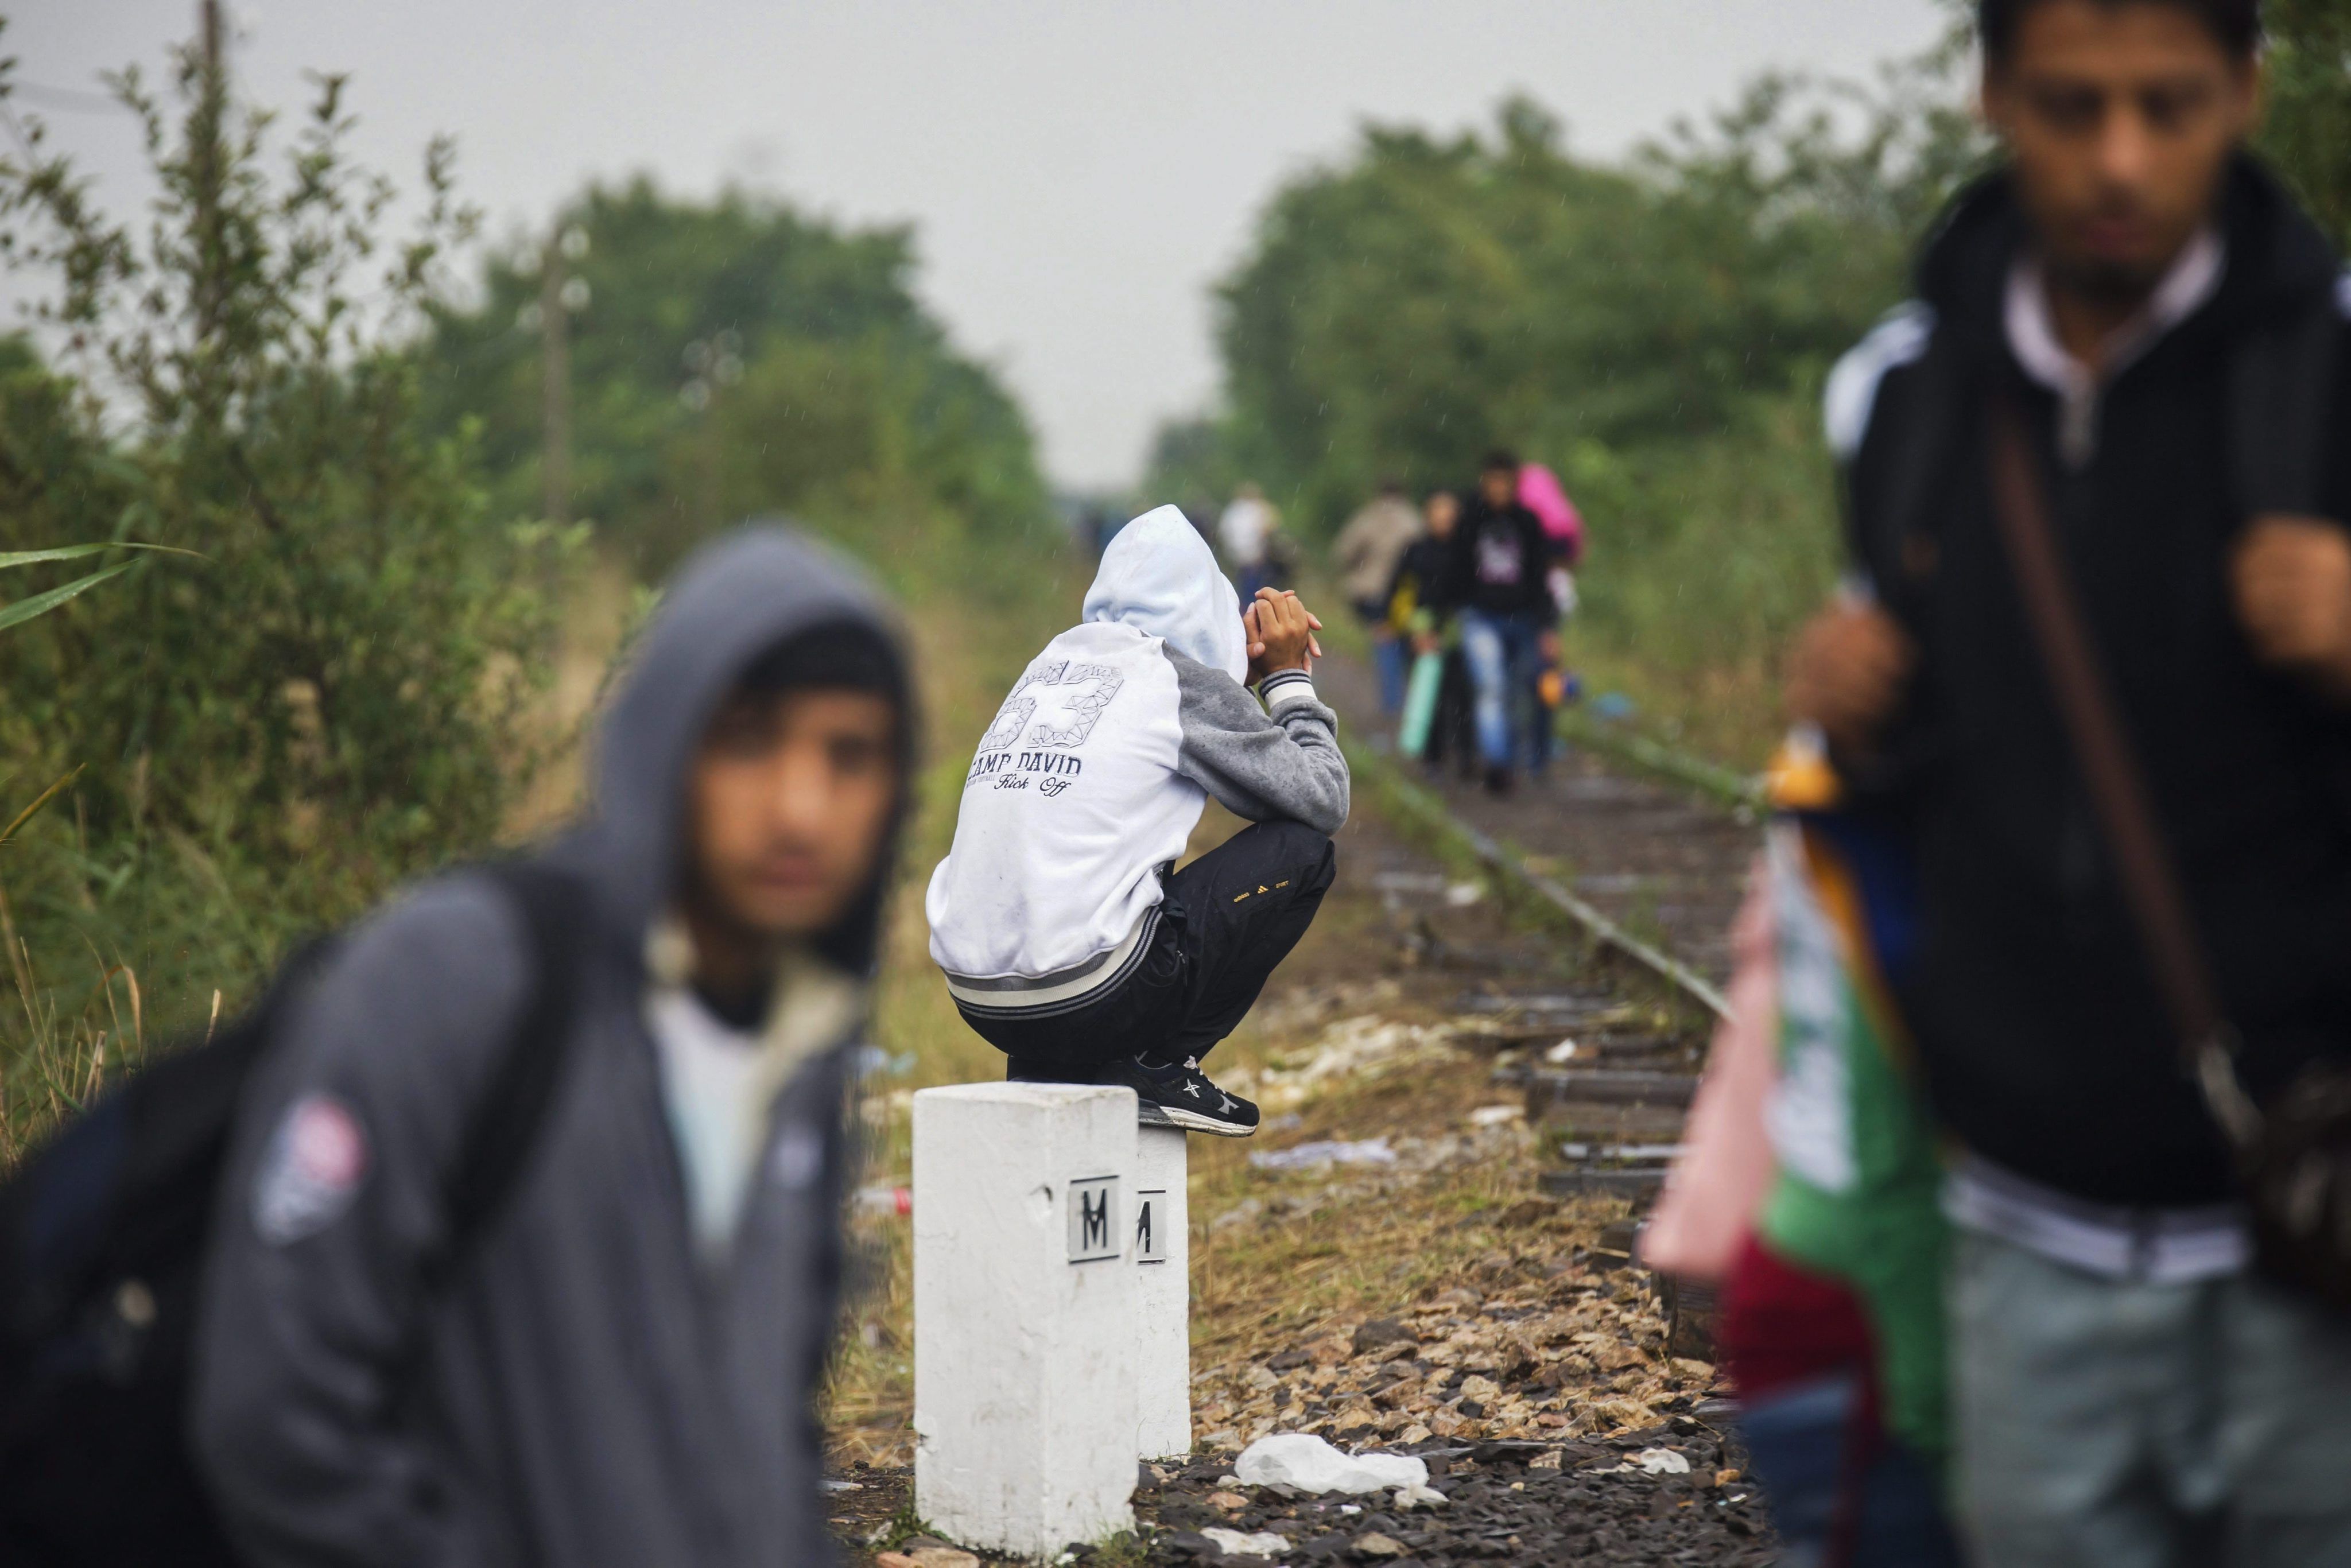 3650 бежанци са пристигнали с влак от Будапеща във Виена